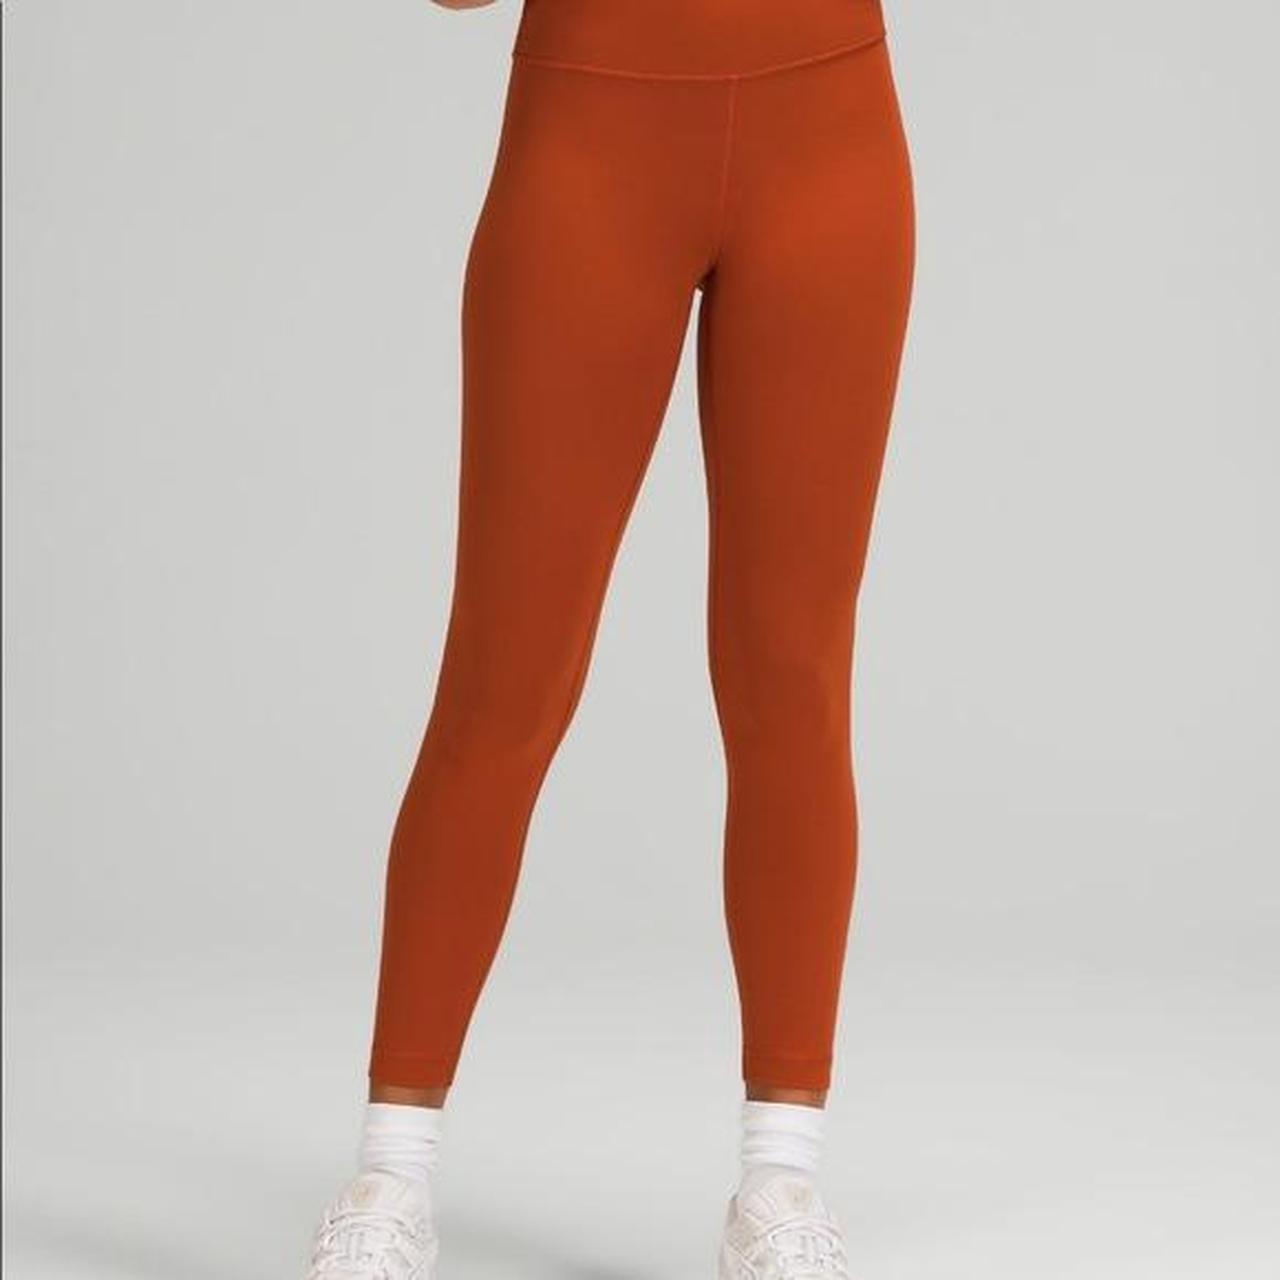 Lululemon burnt orange align leggings full length. - Depop